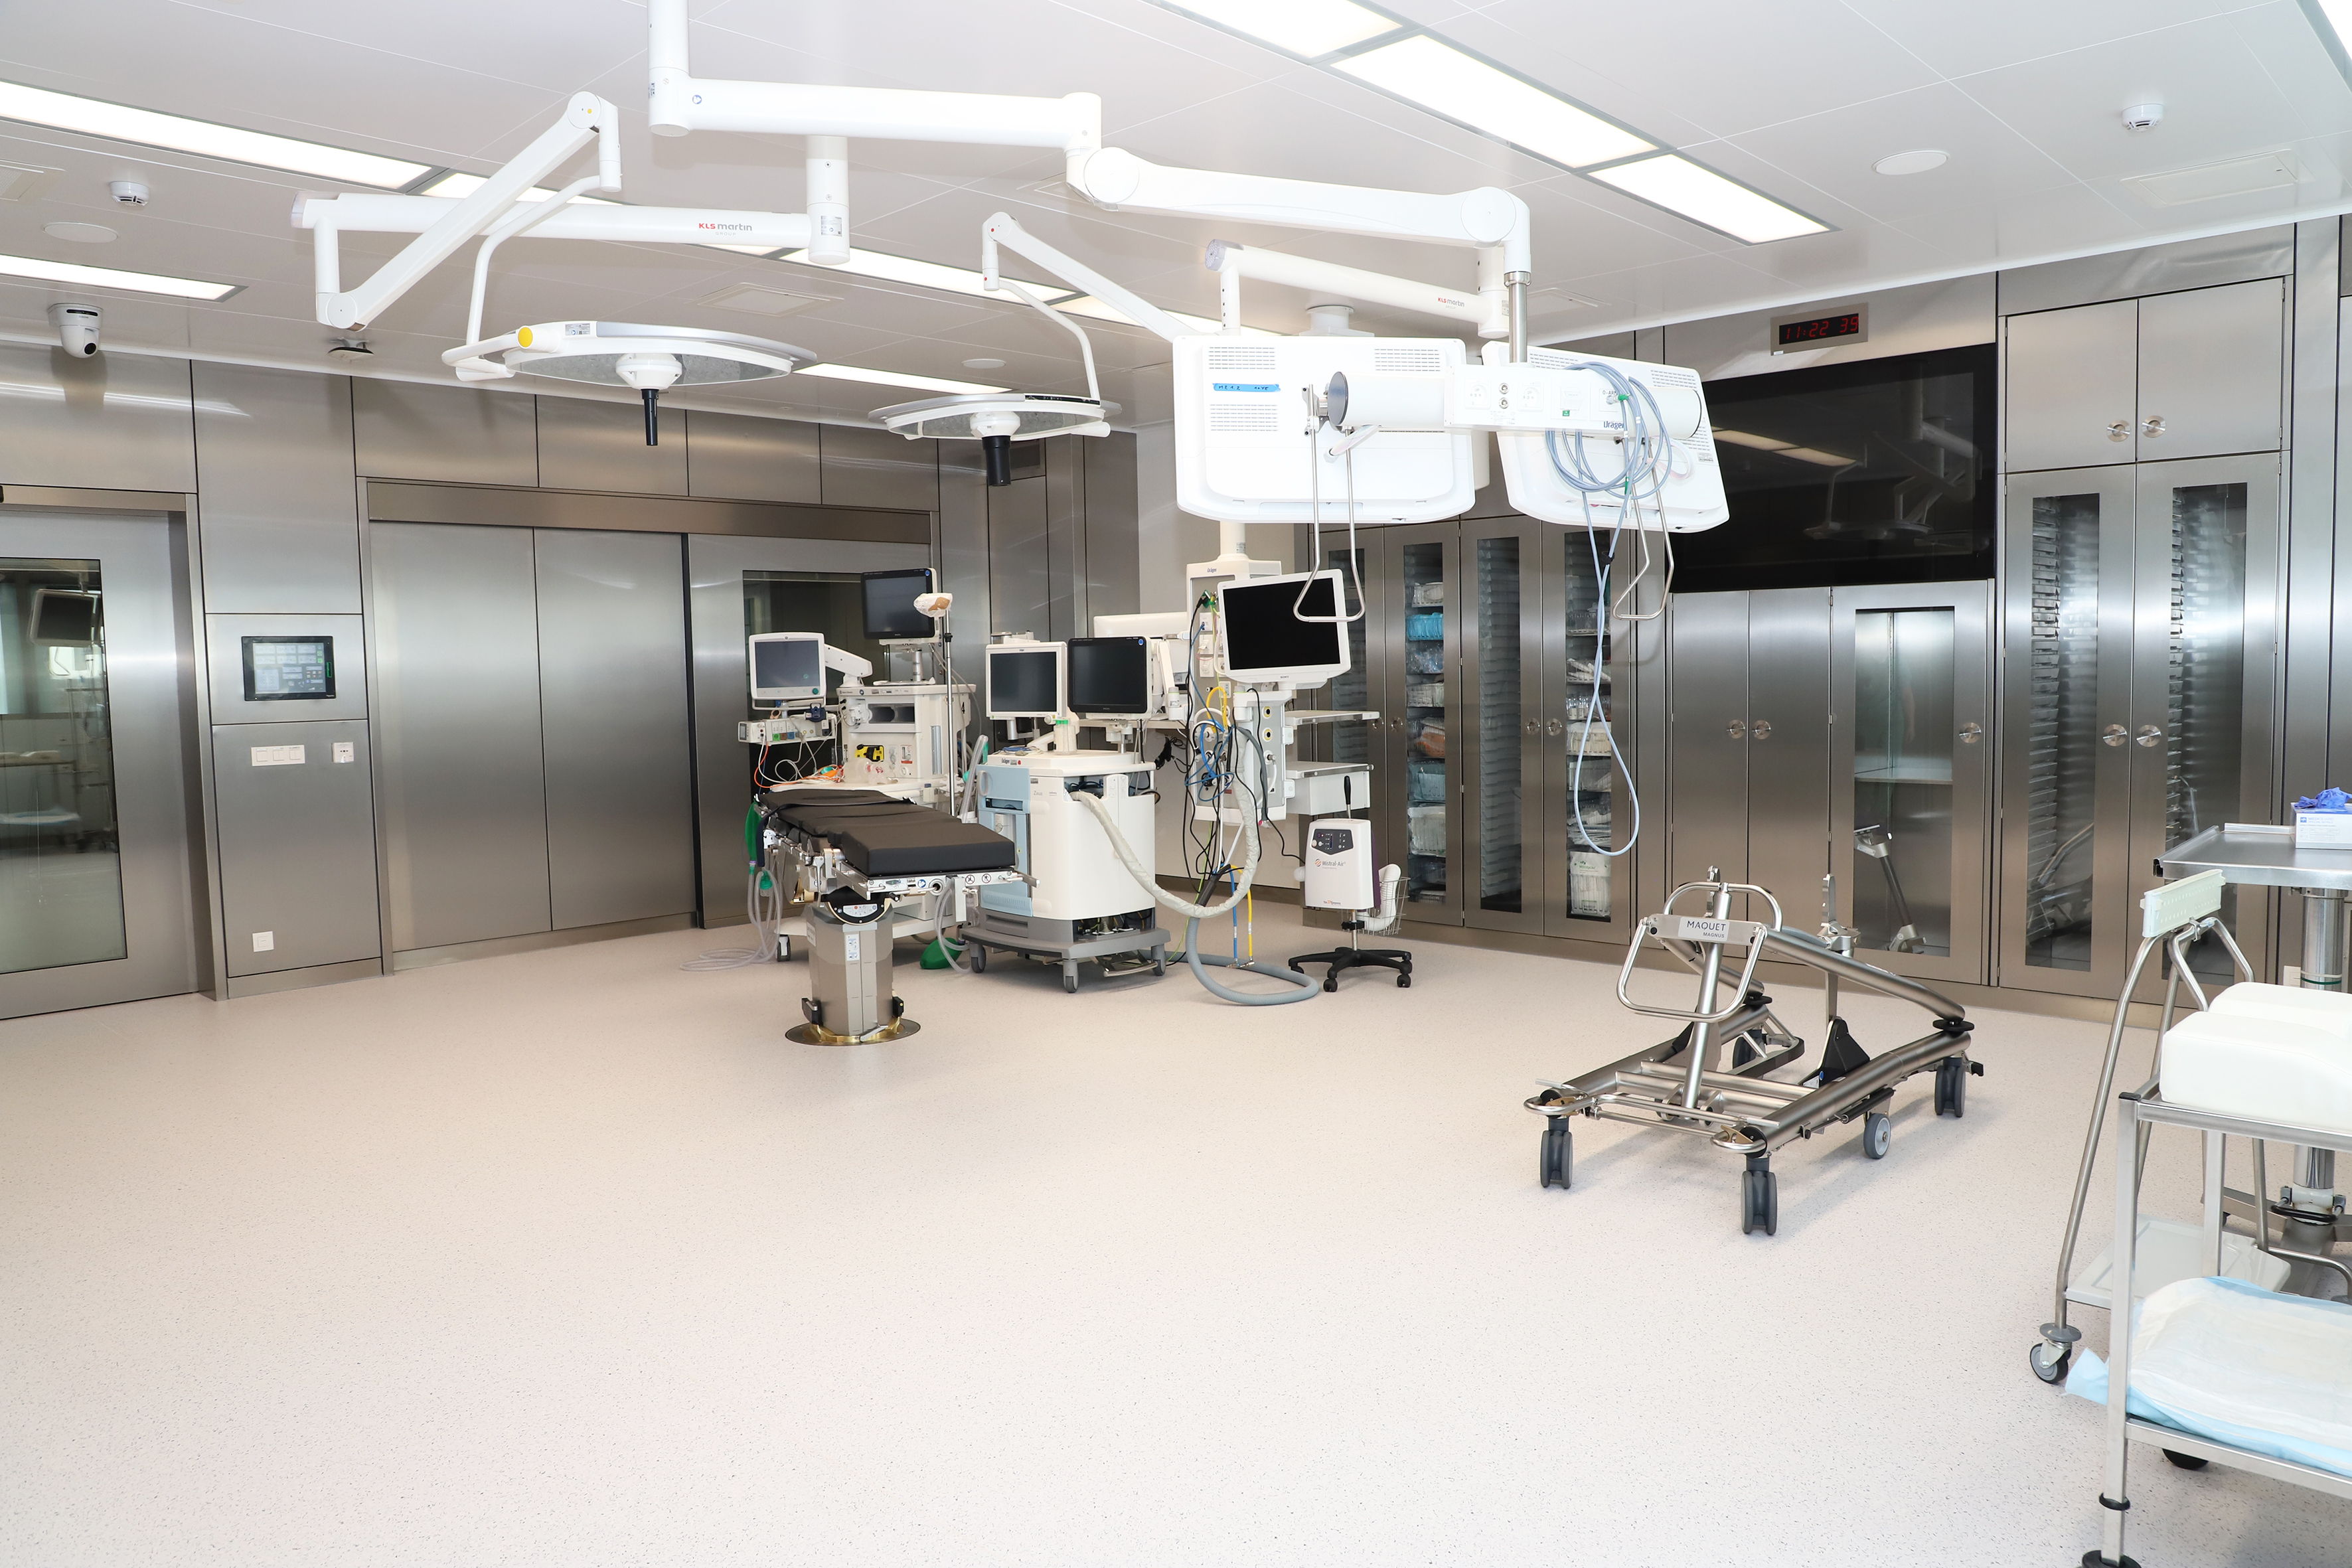 Het operatiekwartier op de vierde verdieping van campus Sint-Jan beschikt over 17 moderne operatiezalen, naast twee zalen in het Cardiocenter van de dienst Cardiologie. Nog dit jaar komt er 1.800m2 extra voor logistieke en organisatorische ondersteuning.